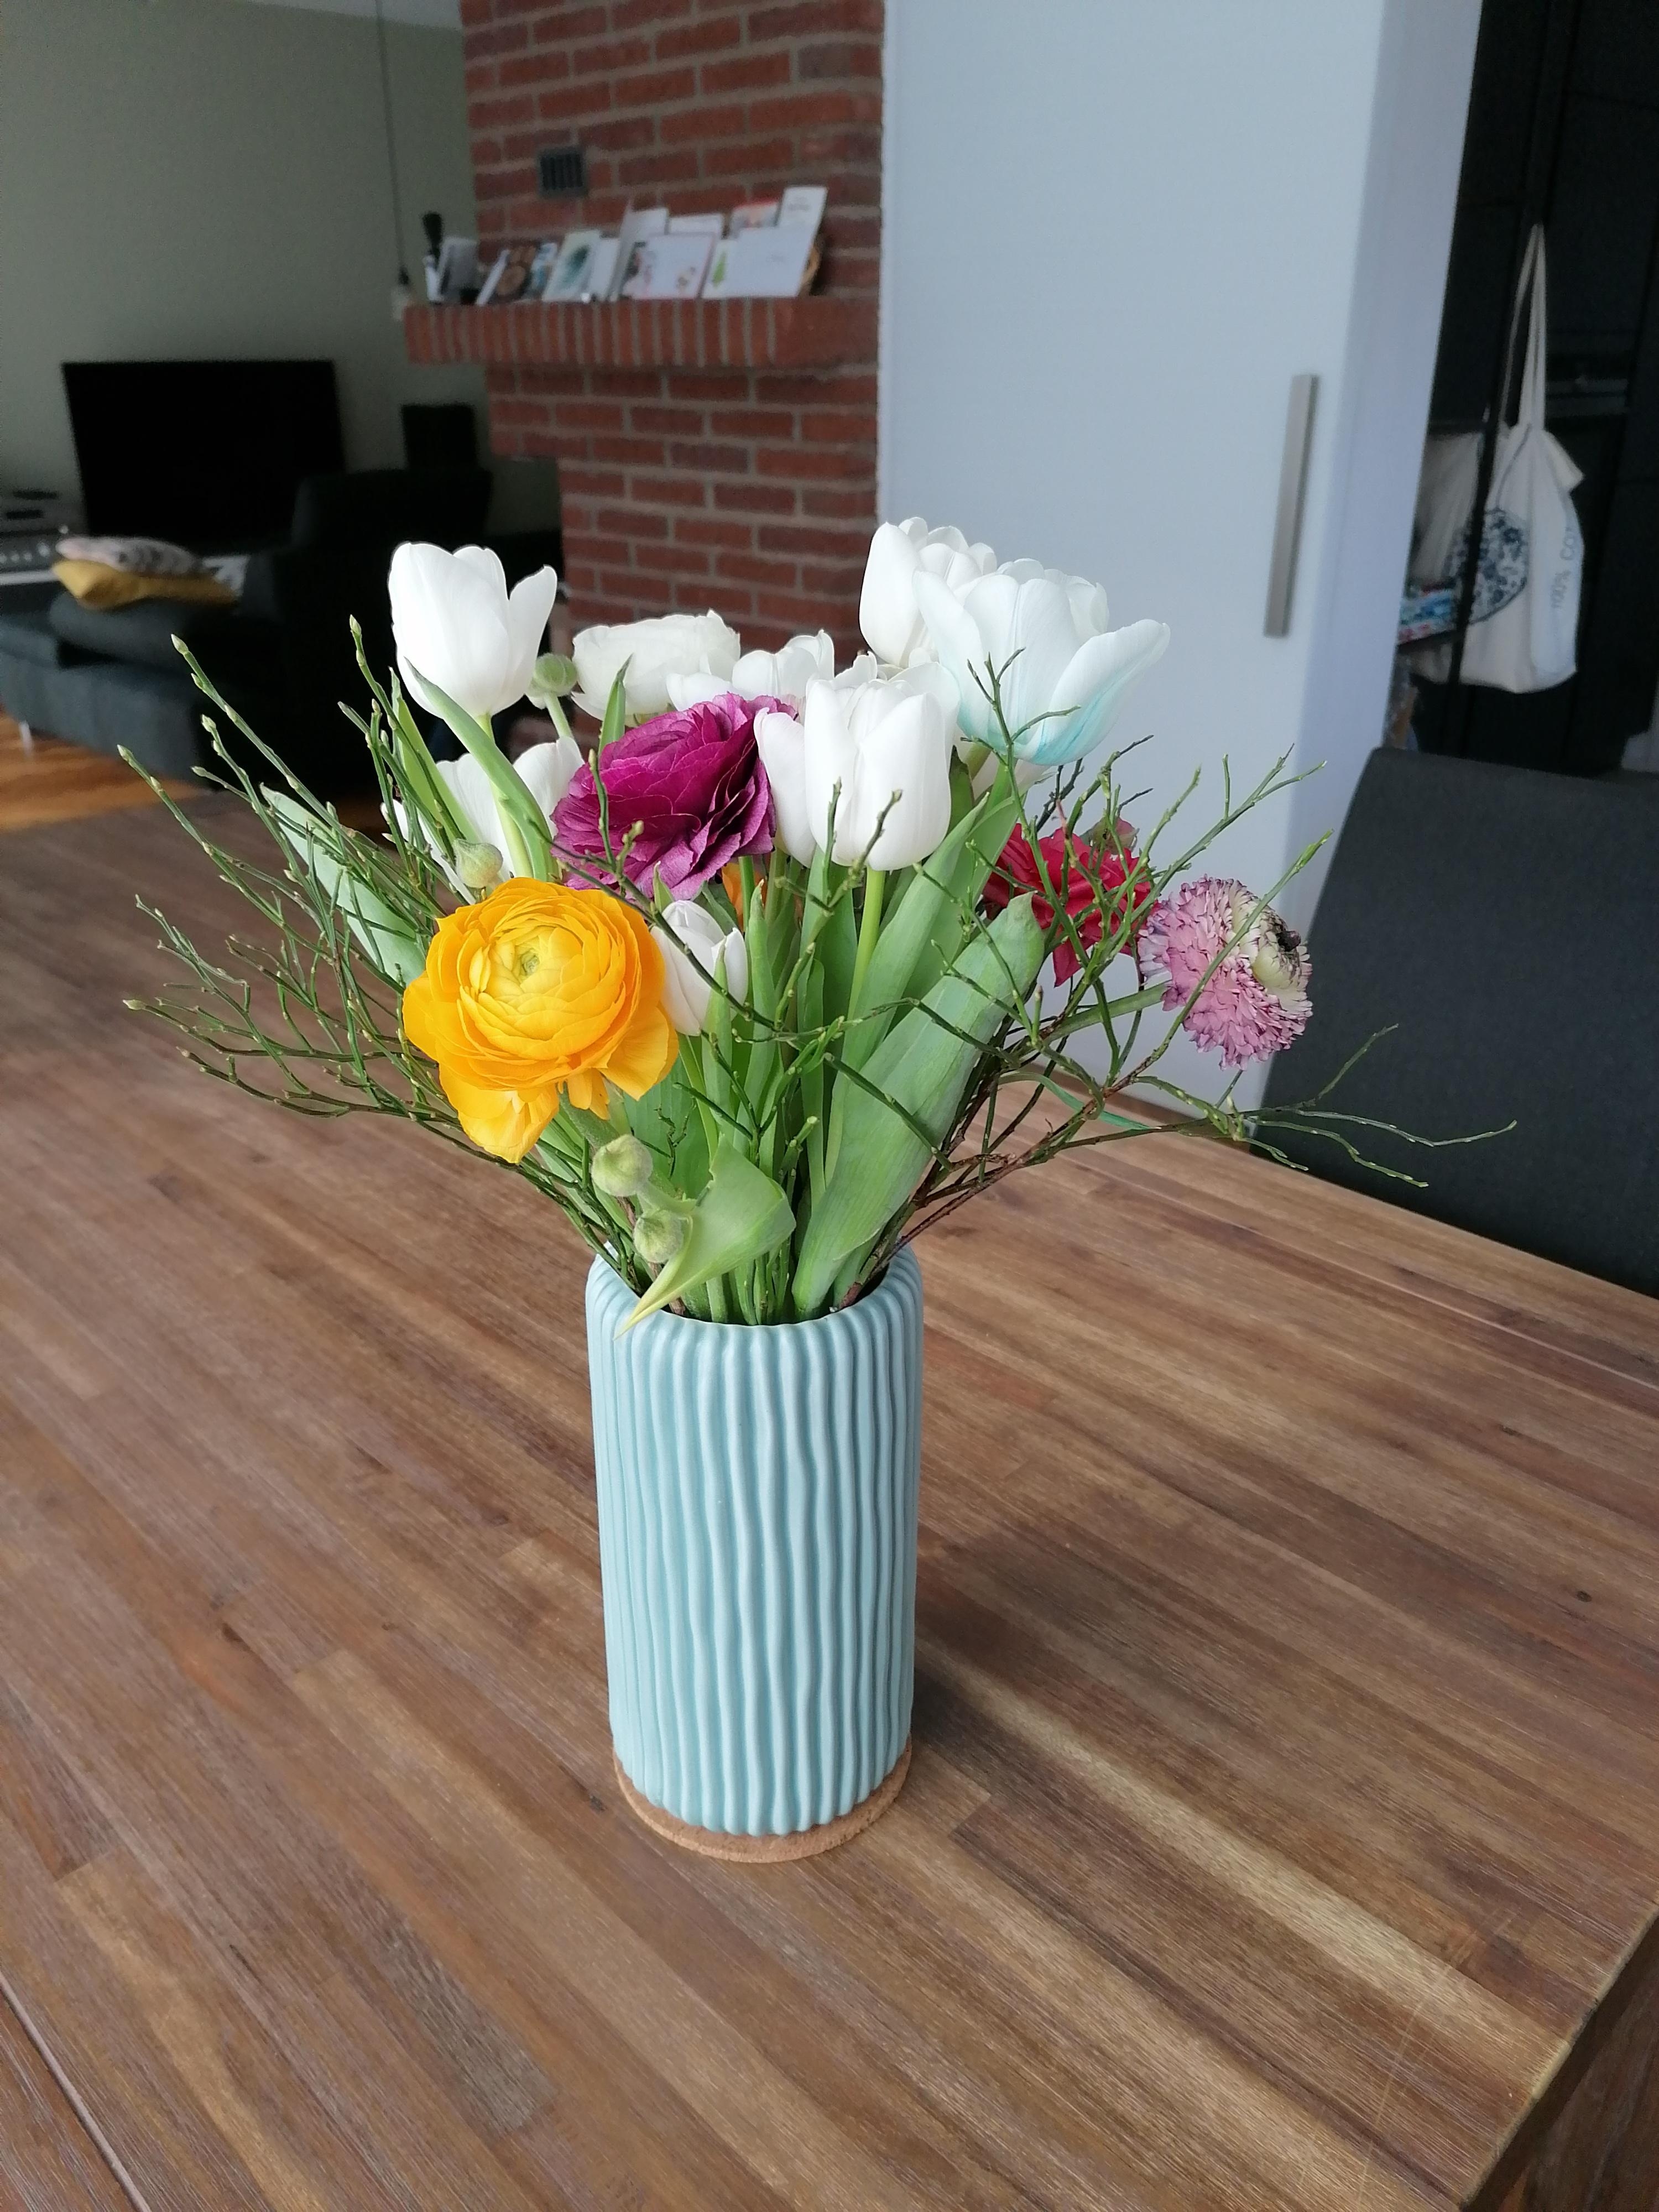 aus zwei mach eins. Wenn der Blumenstrauß samt Vase auf dem Boden landet... #Blumen #thatslife